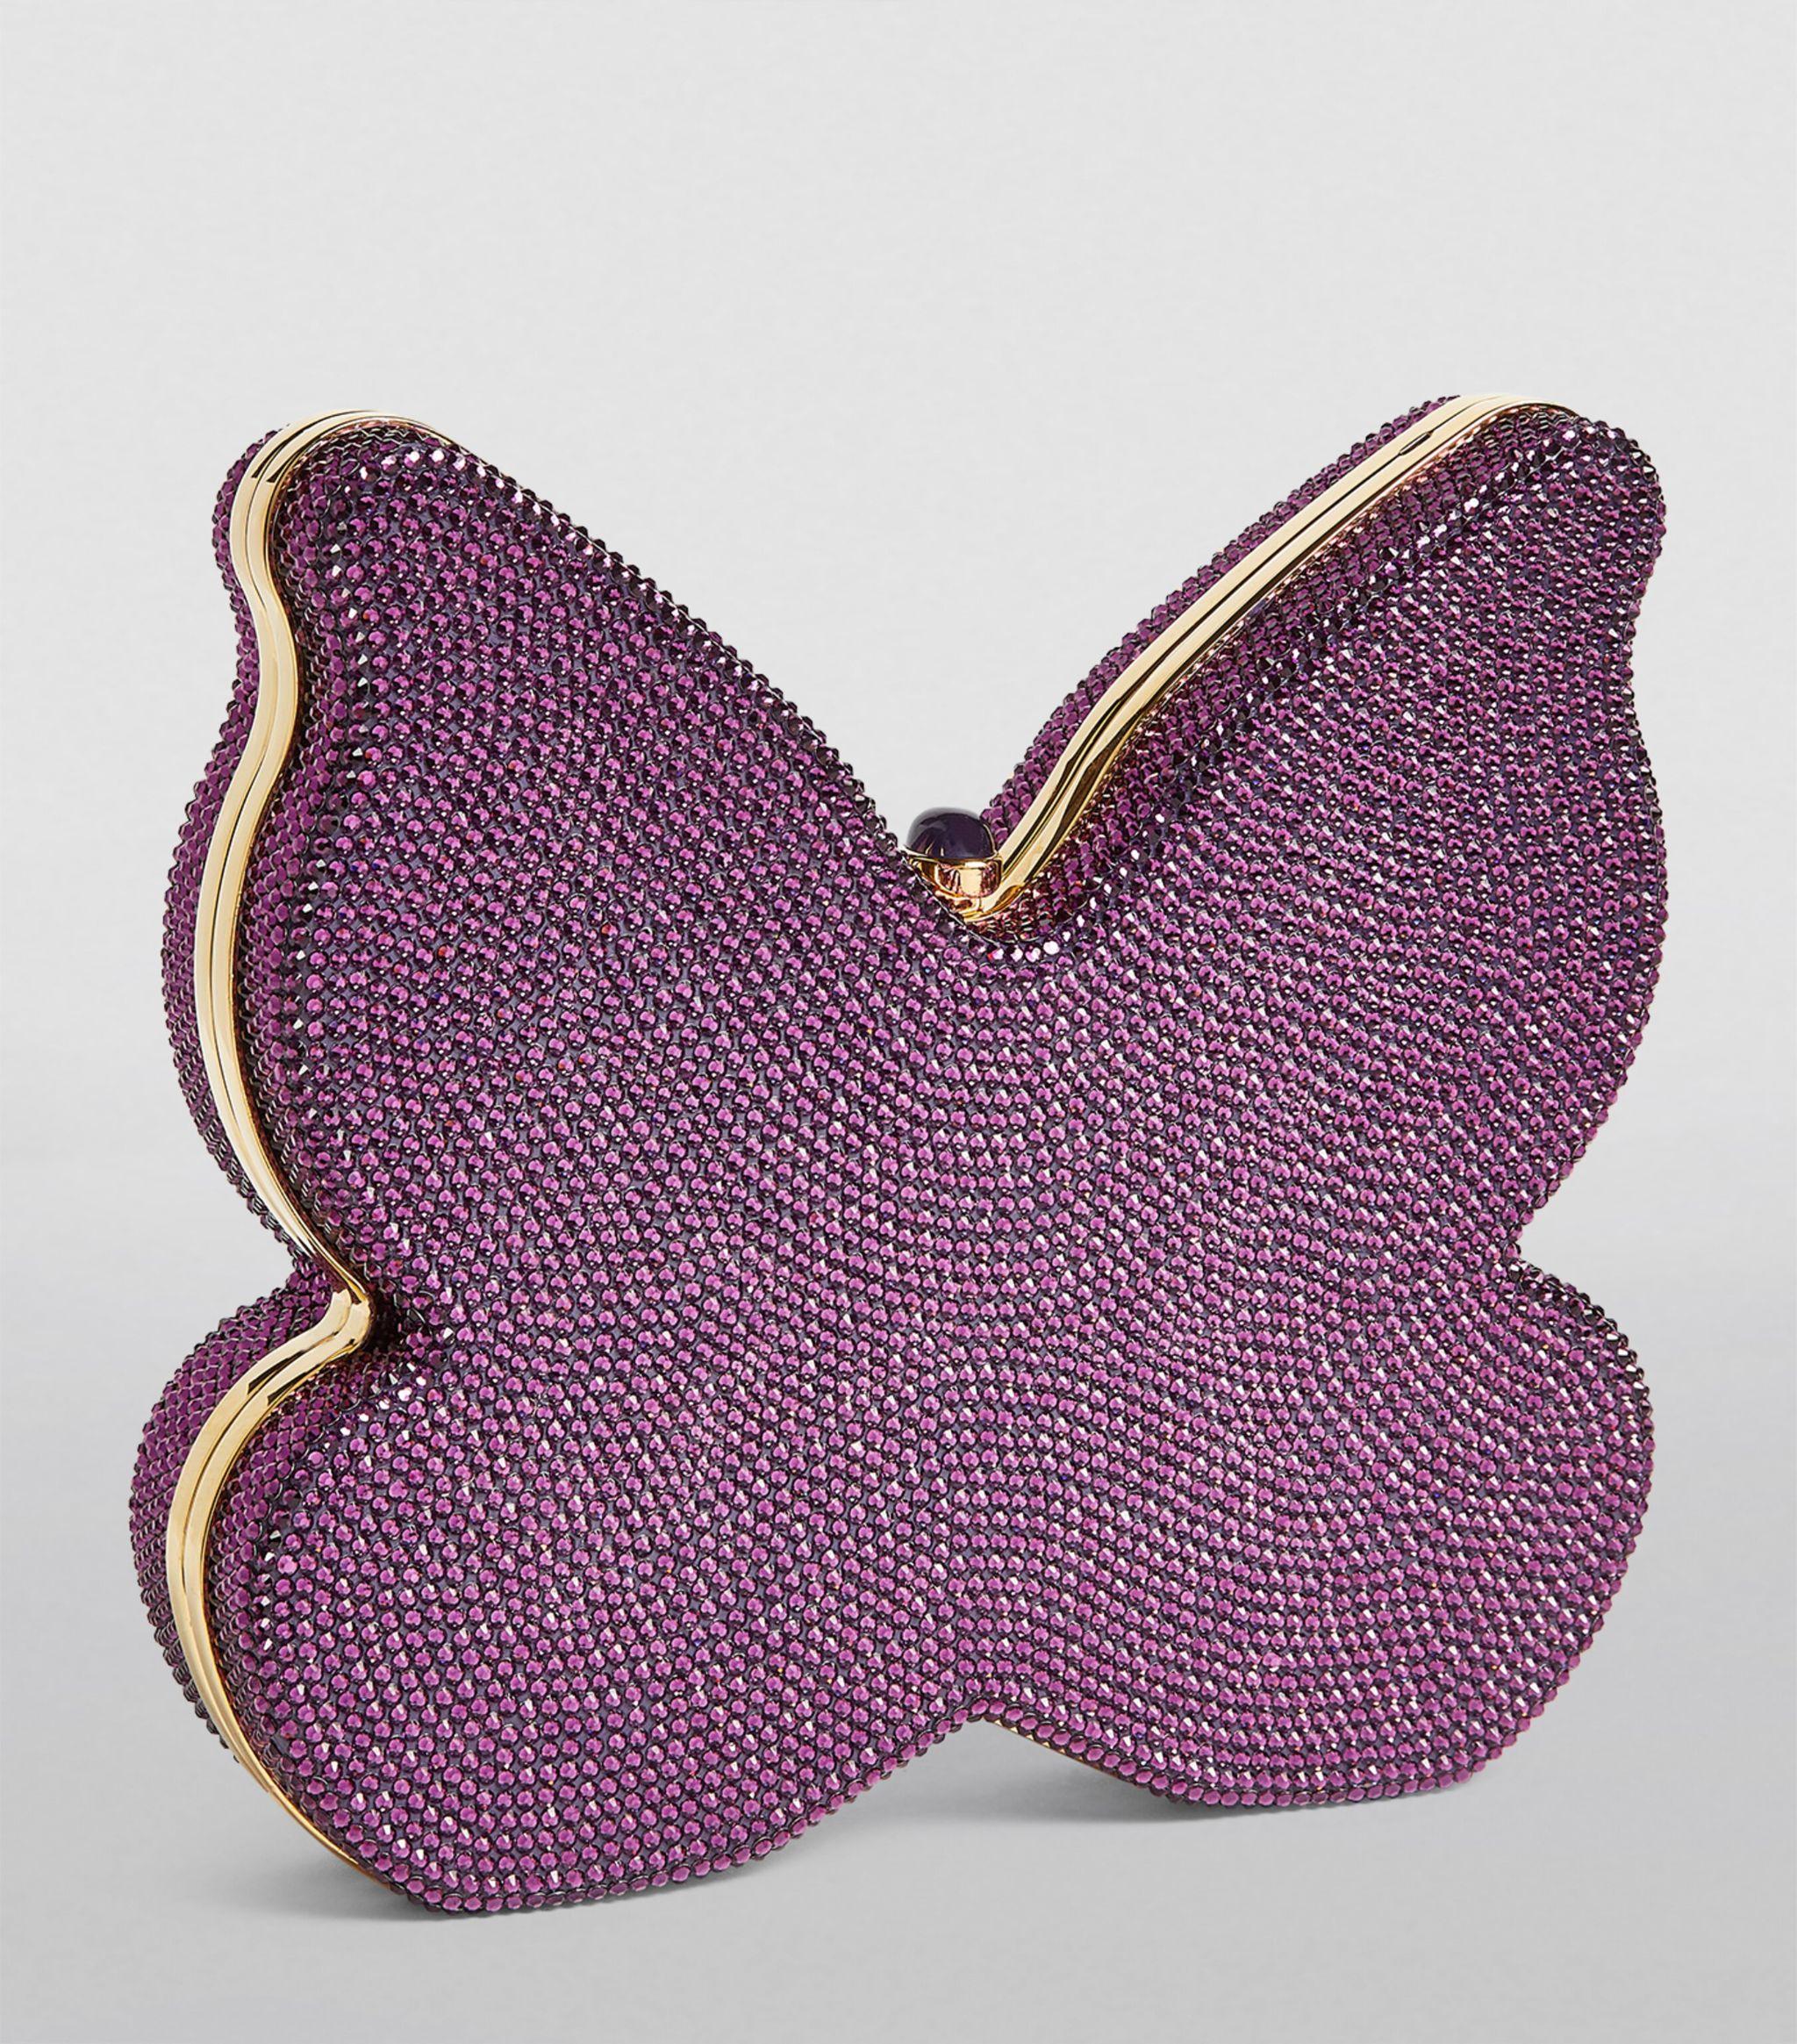 Judith Leiber Metallic Lizard Butterfly Clutch – Ladybag International